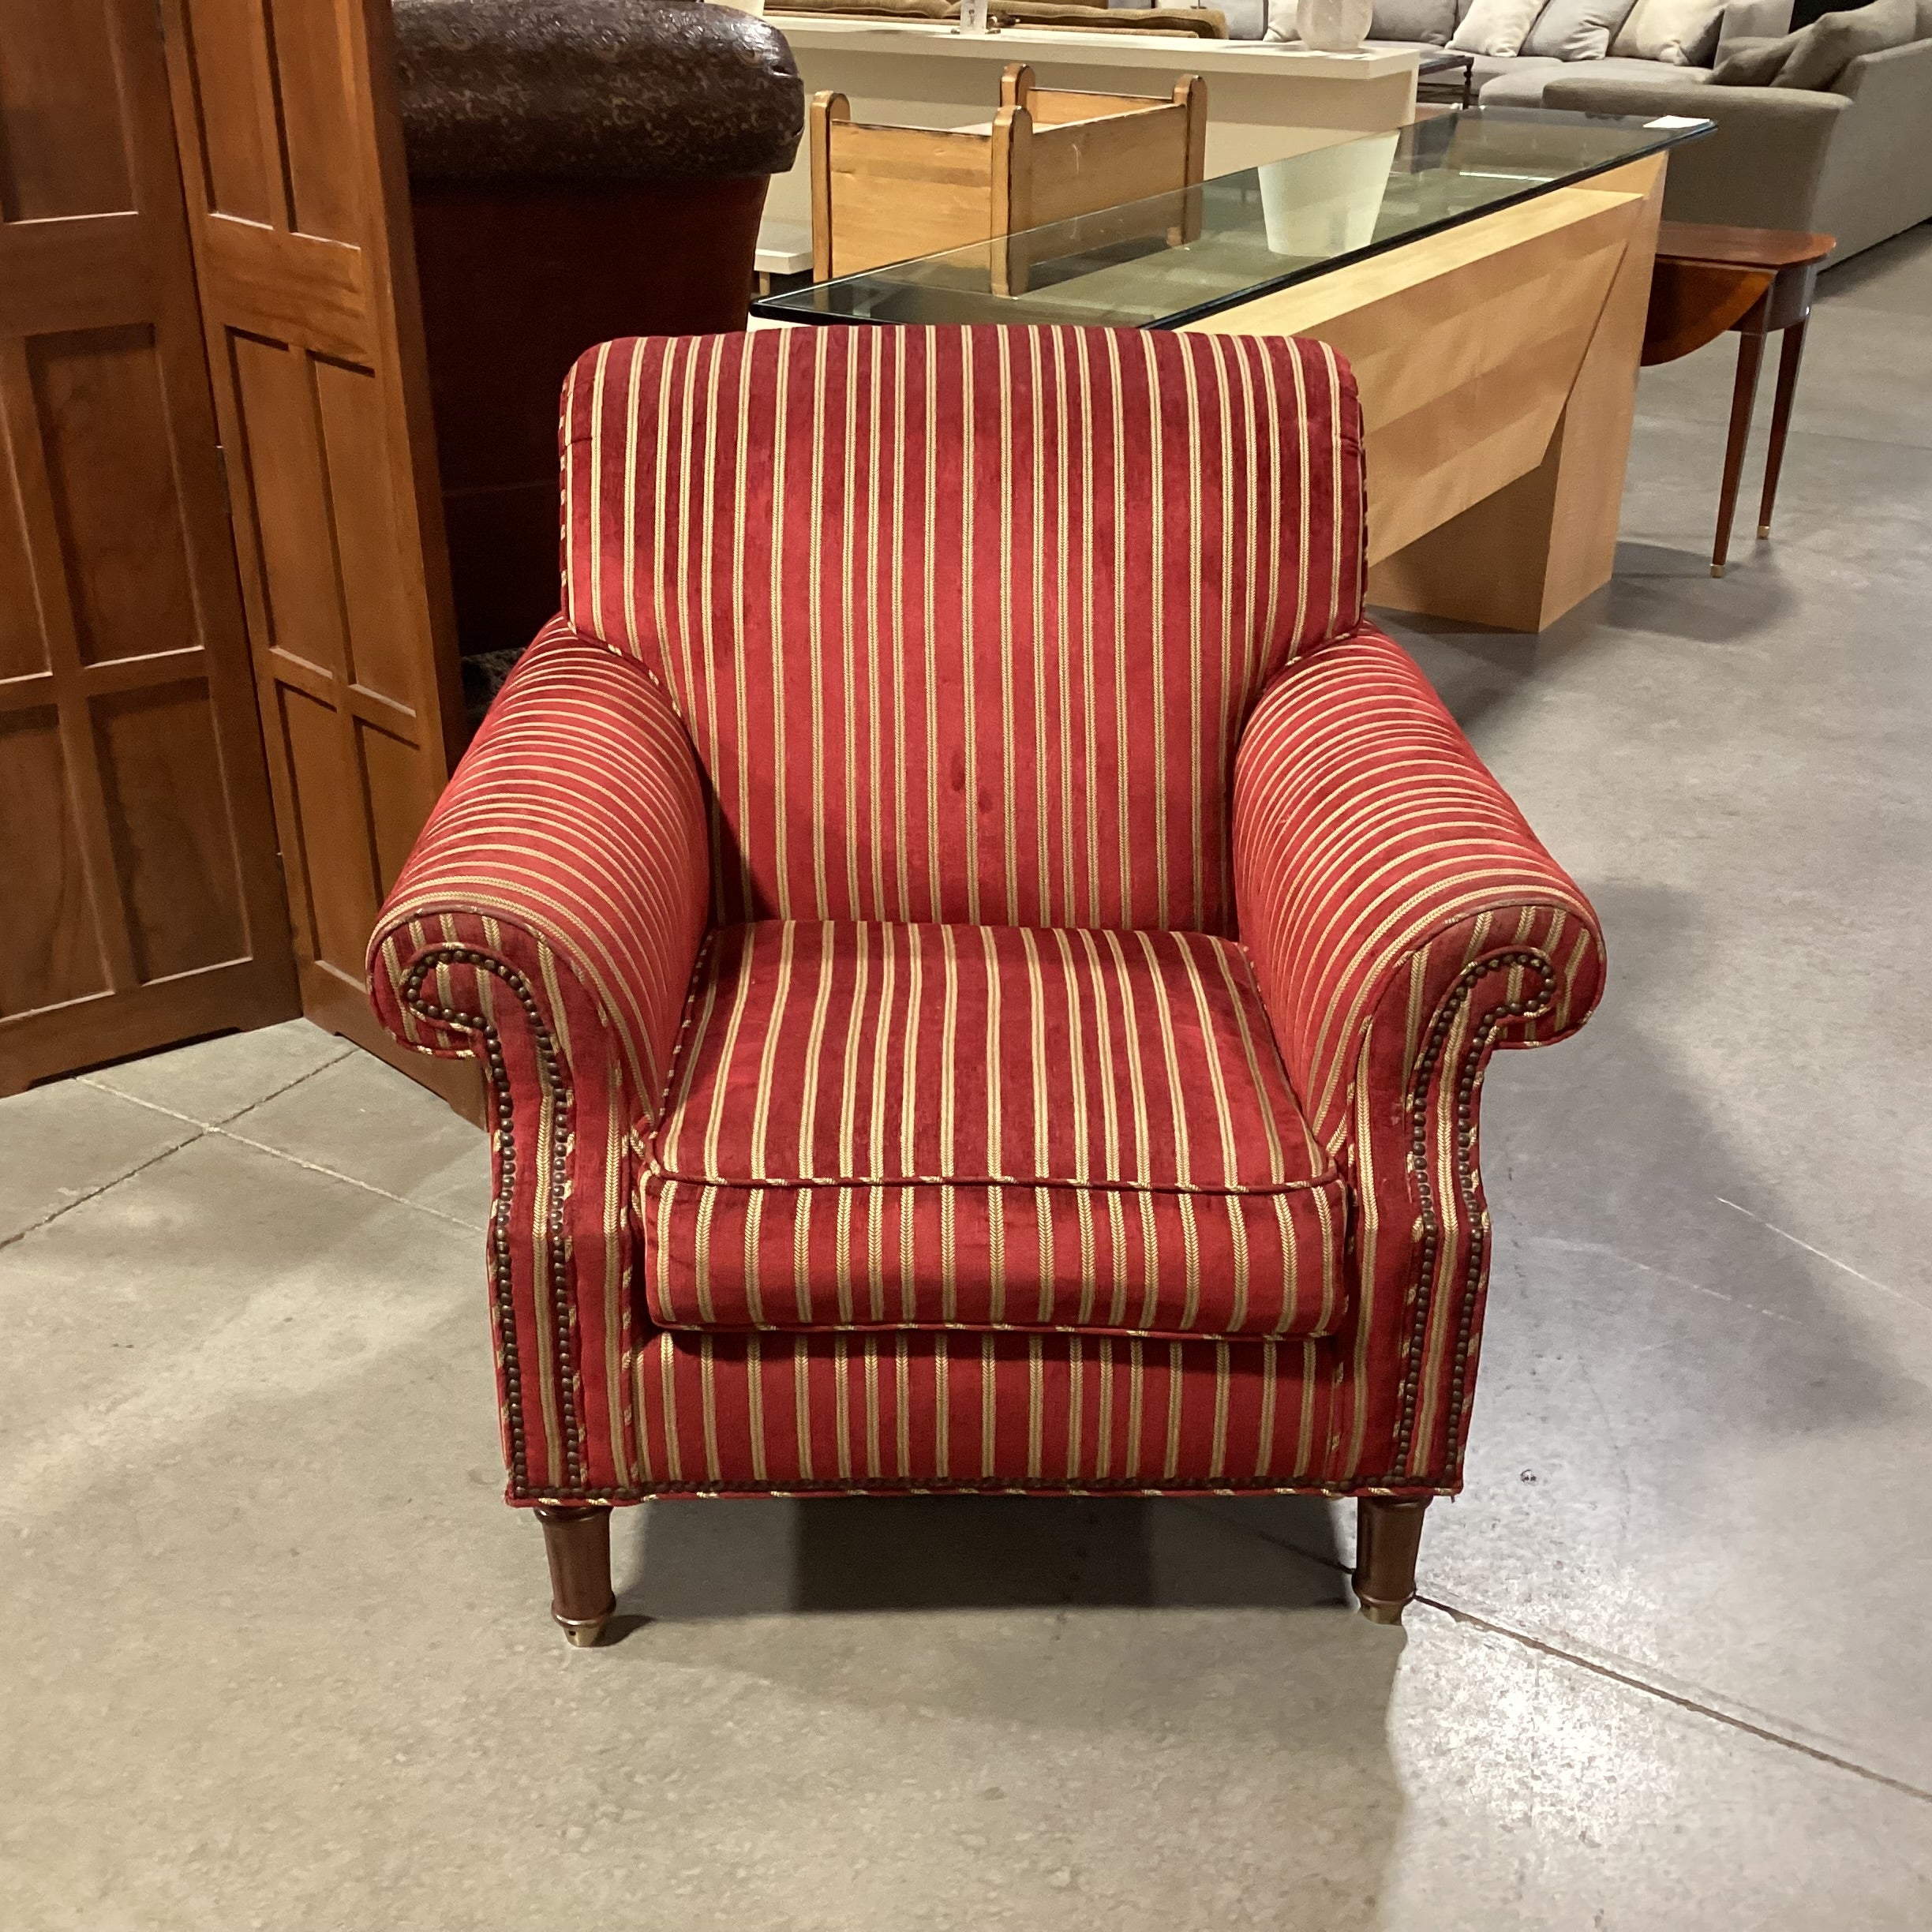 Pearson Red Gold Stripe Chair 37"x 38"x 35"